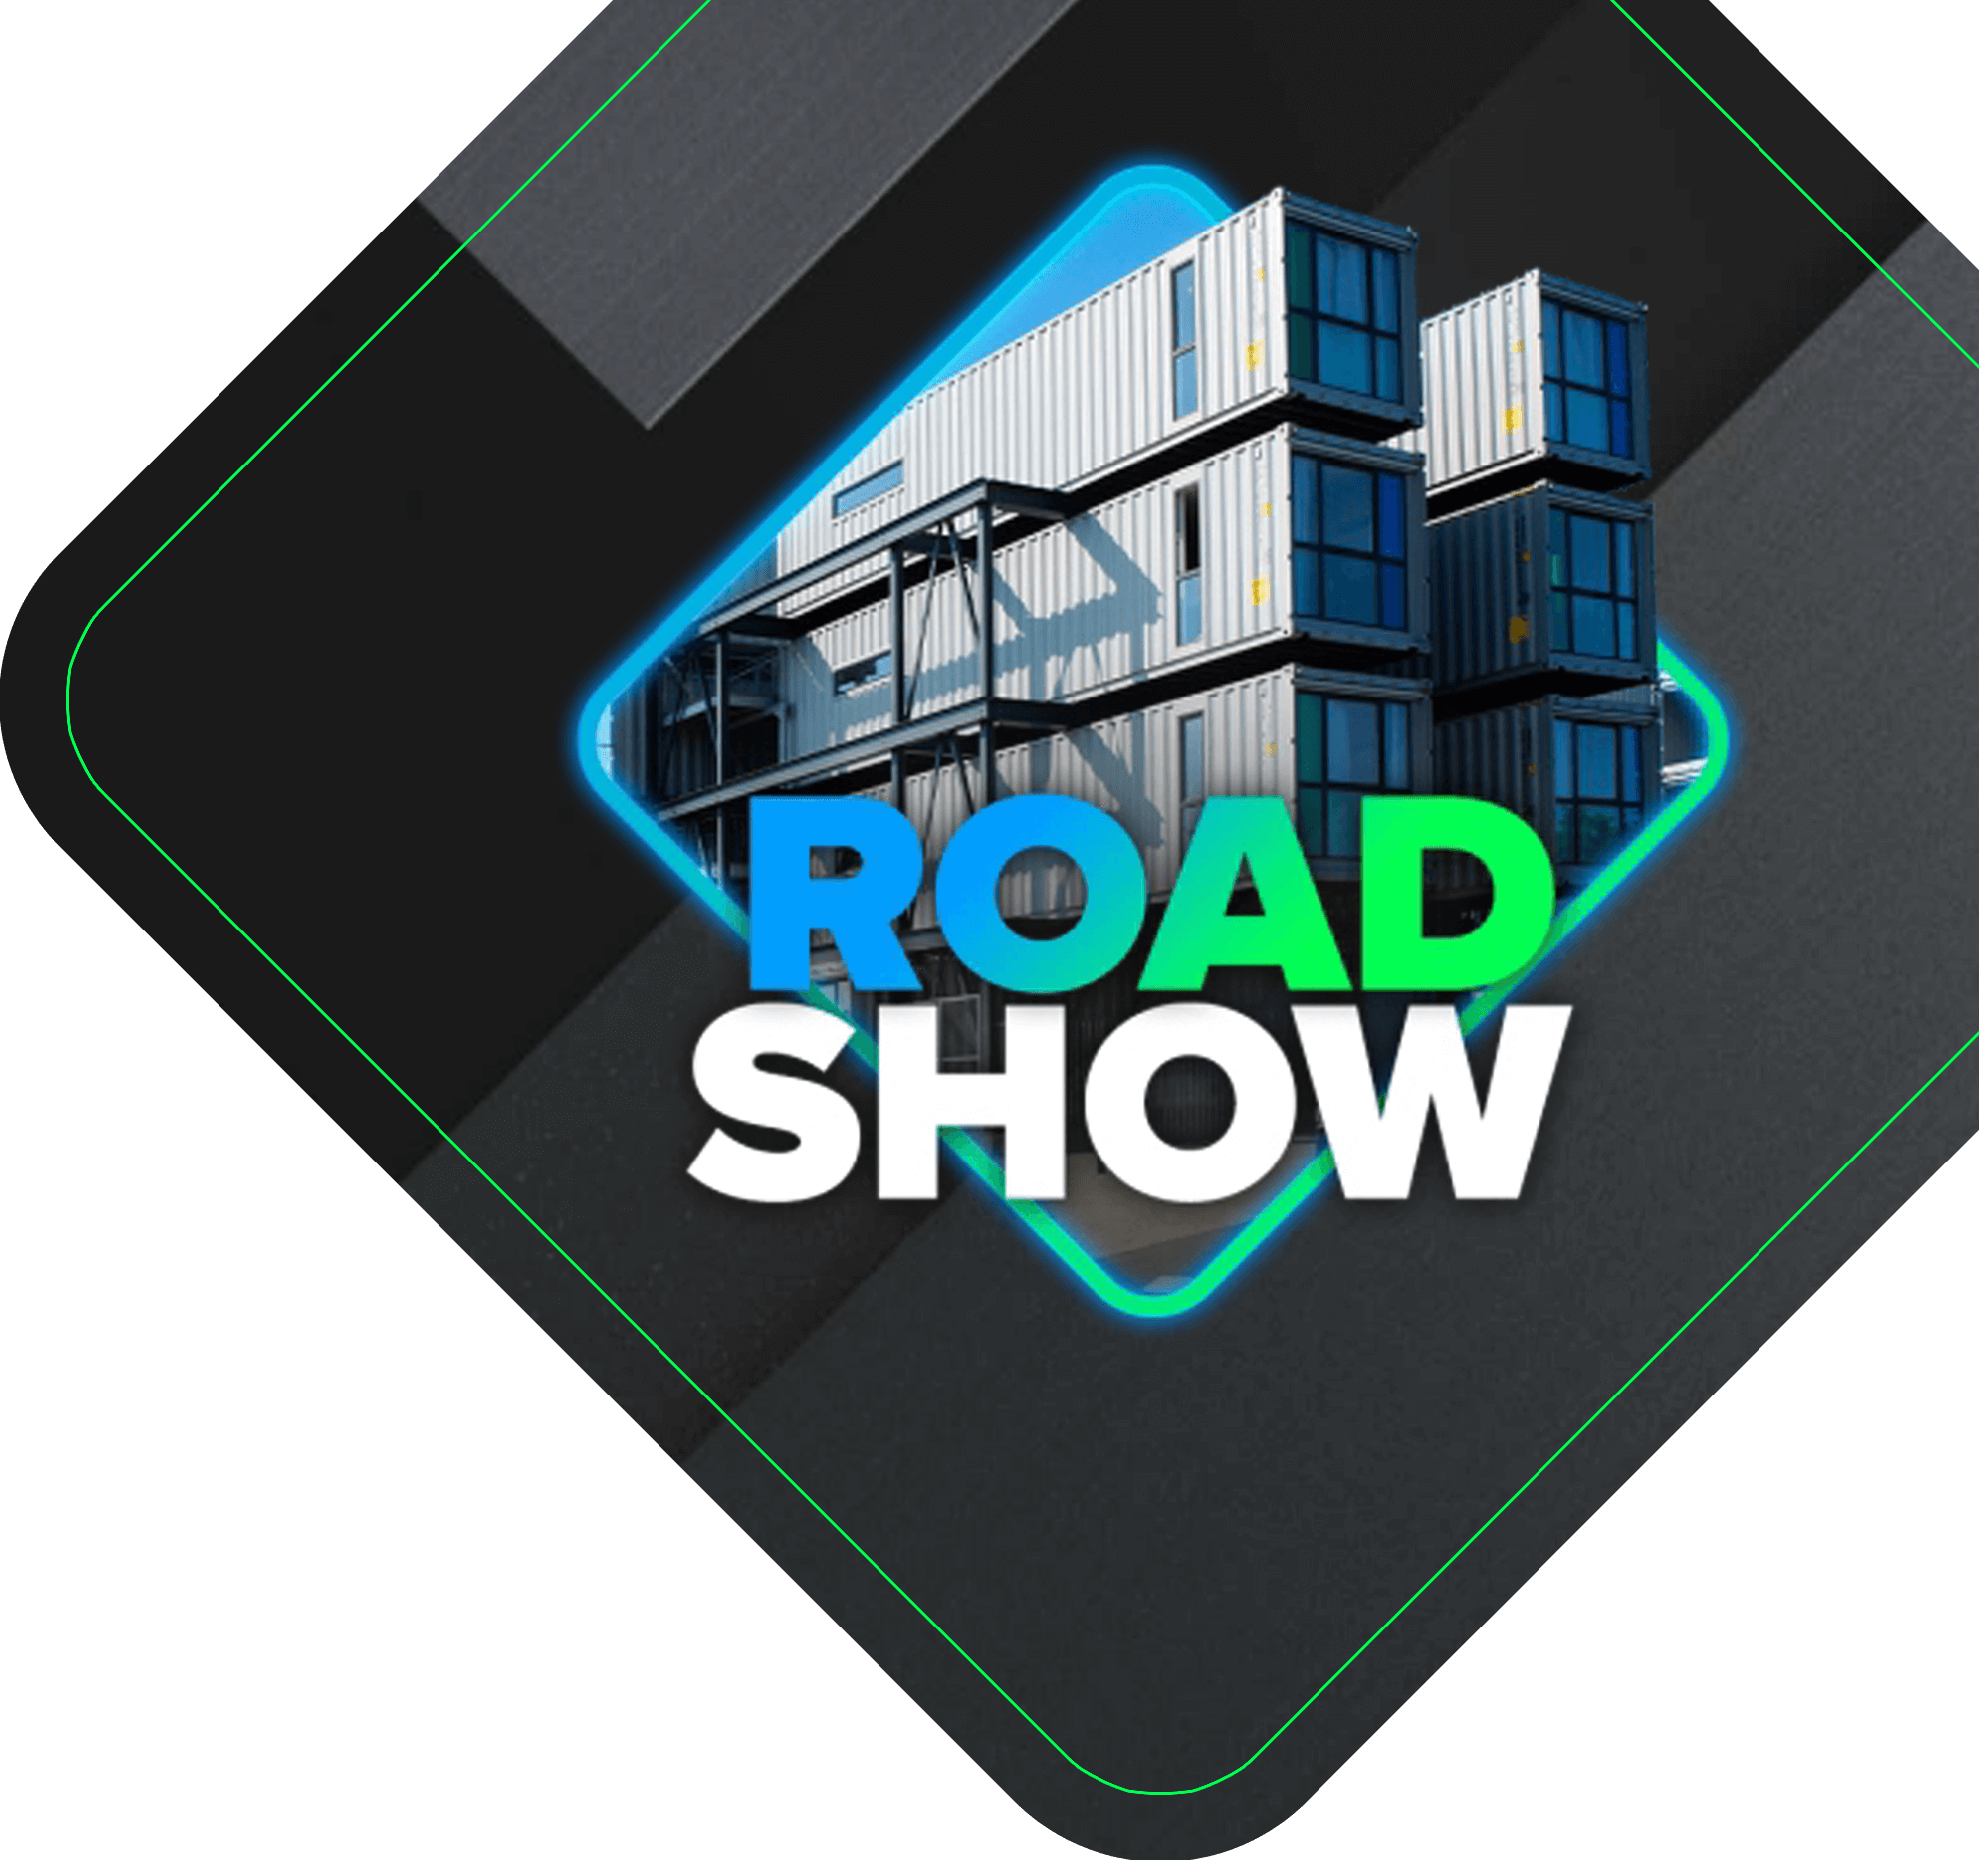 EM BREVE! Inscrições para o RoadShow da Construção Modular em Curitiba-PR